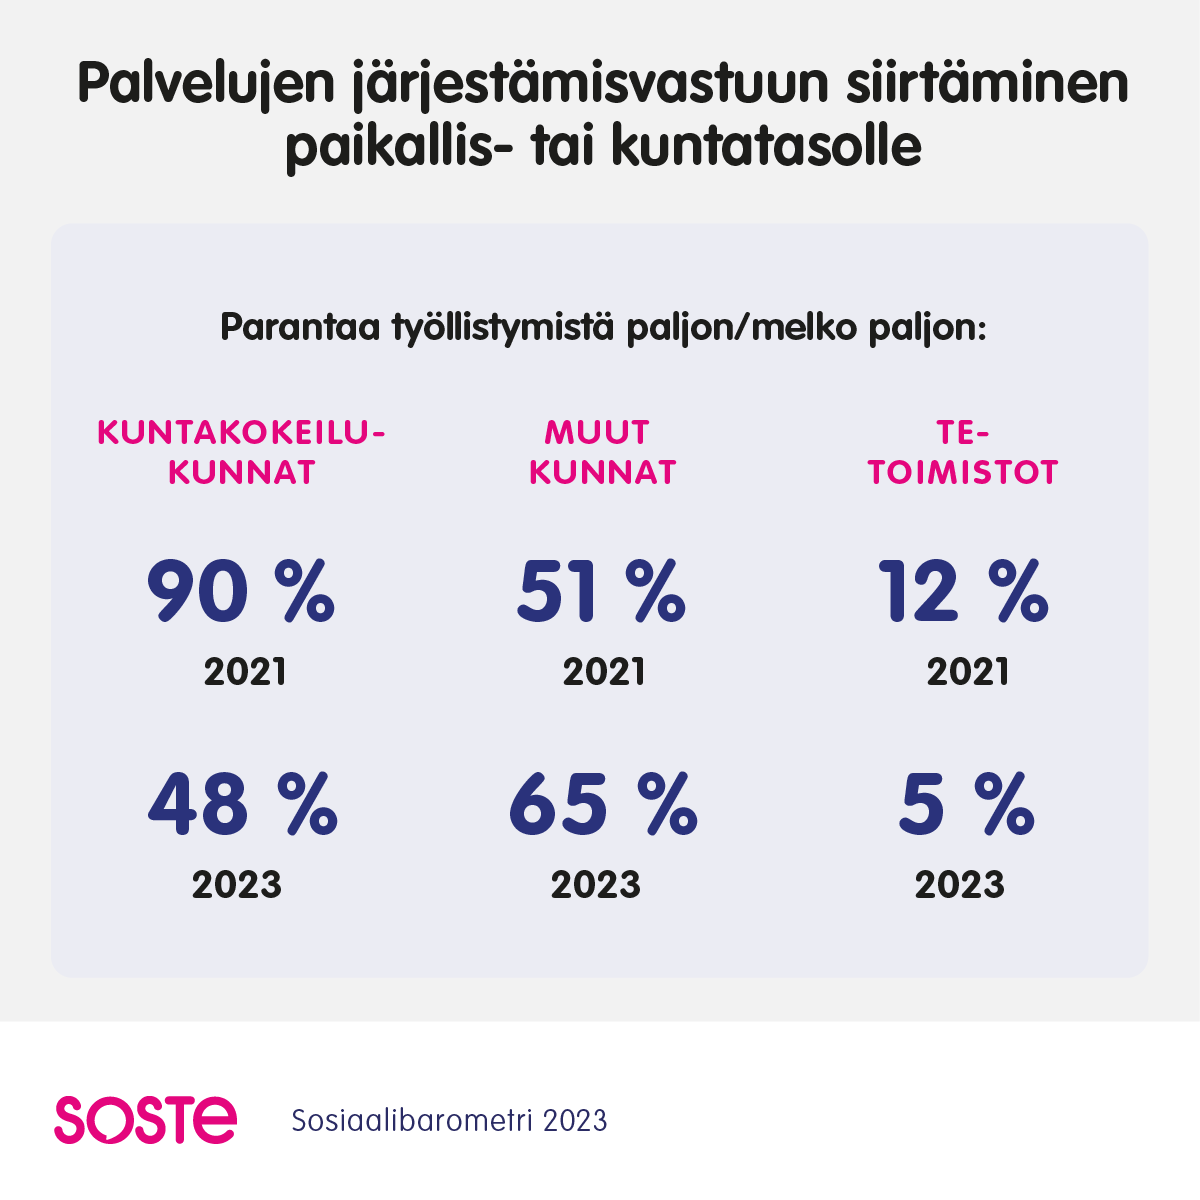 Työllisyyspalvelujen järjestämisvastuun siirtäminen paikallis- tai kuntatasolle parantaa työllistymistä: kuntakokeilut 2021: 90%, 2023: 48%, muut kunnat 2021: 51%, 2023: 65%, te-toimistot: 2021: 12%, 2023: 5%